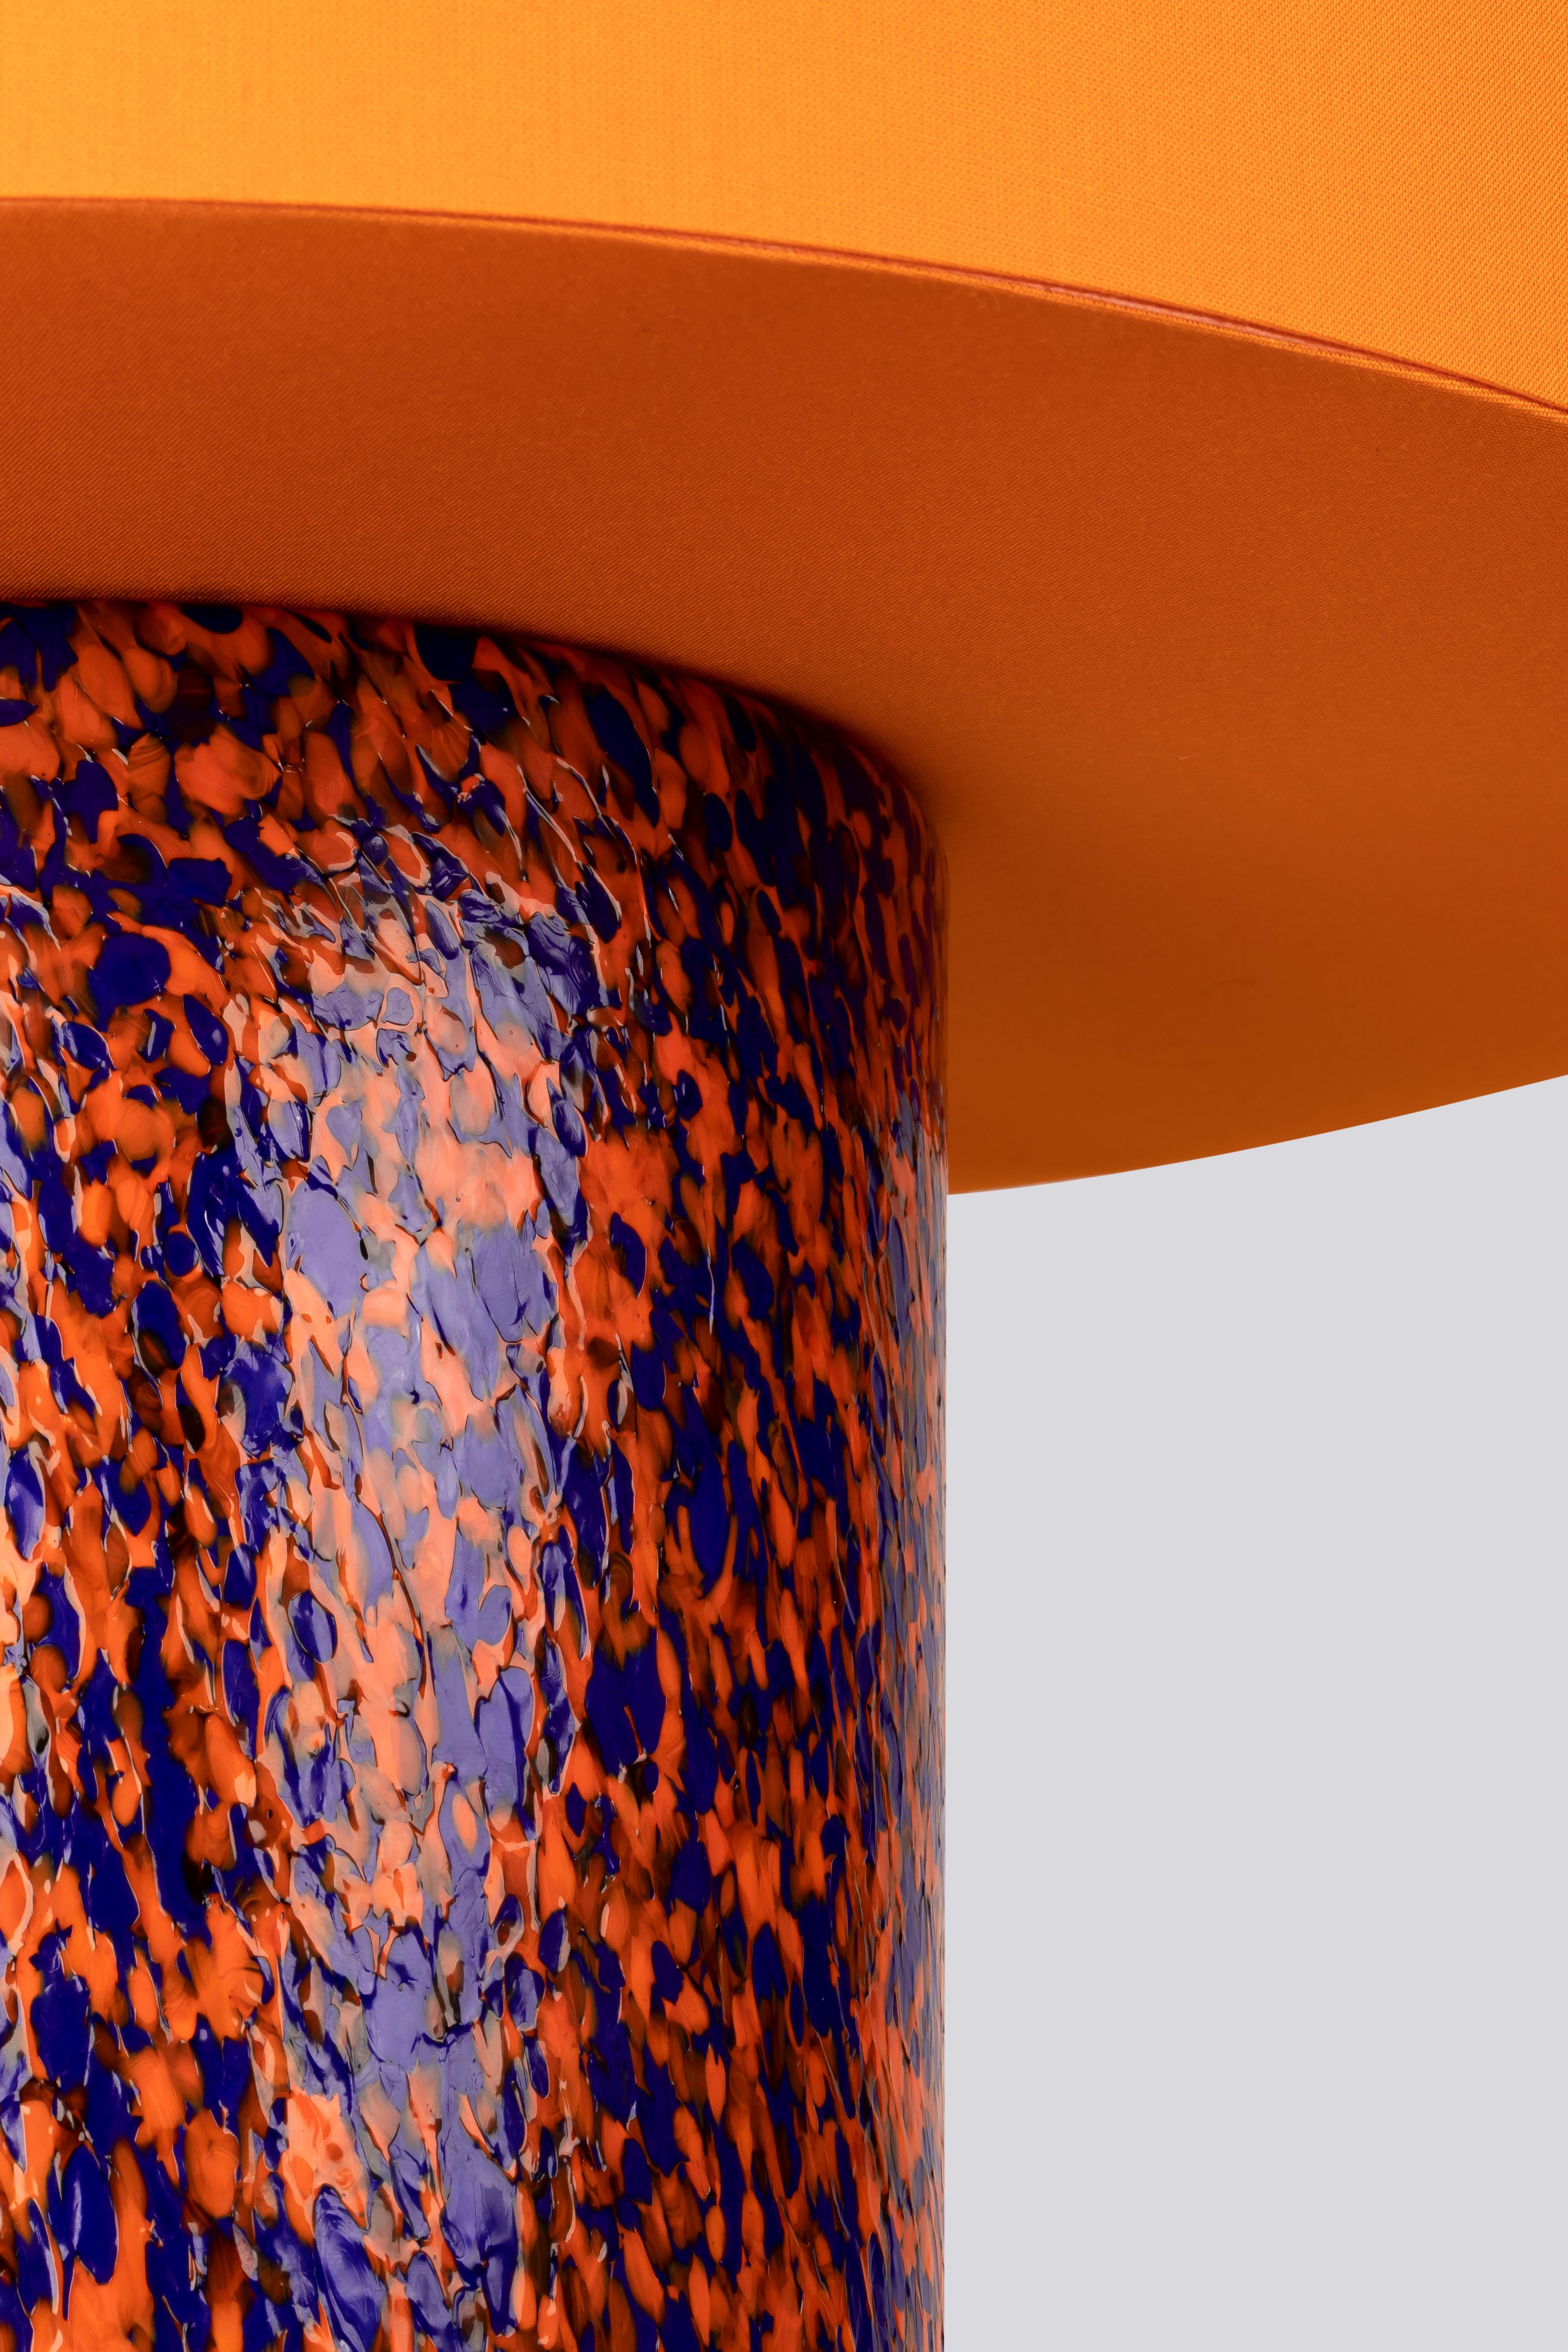 Découvrez notre lampe pilier en verre de Murano, une pièce intemporelle et contemporaine qui allie élégance et savoir-faire. La base de la lampe, fabriquée de manière experte dans une forme de colonne classique, met en valeur la technique